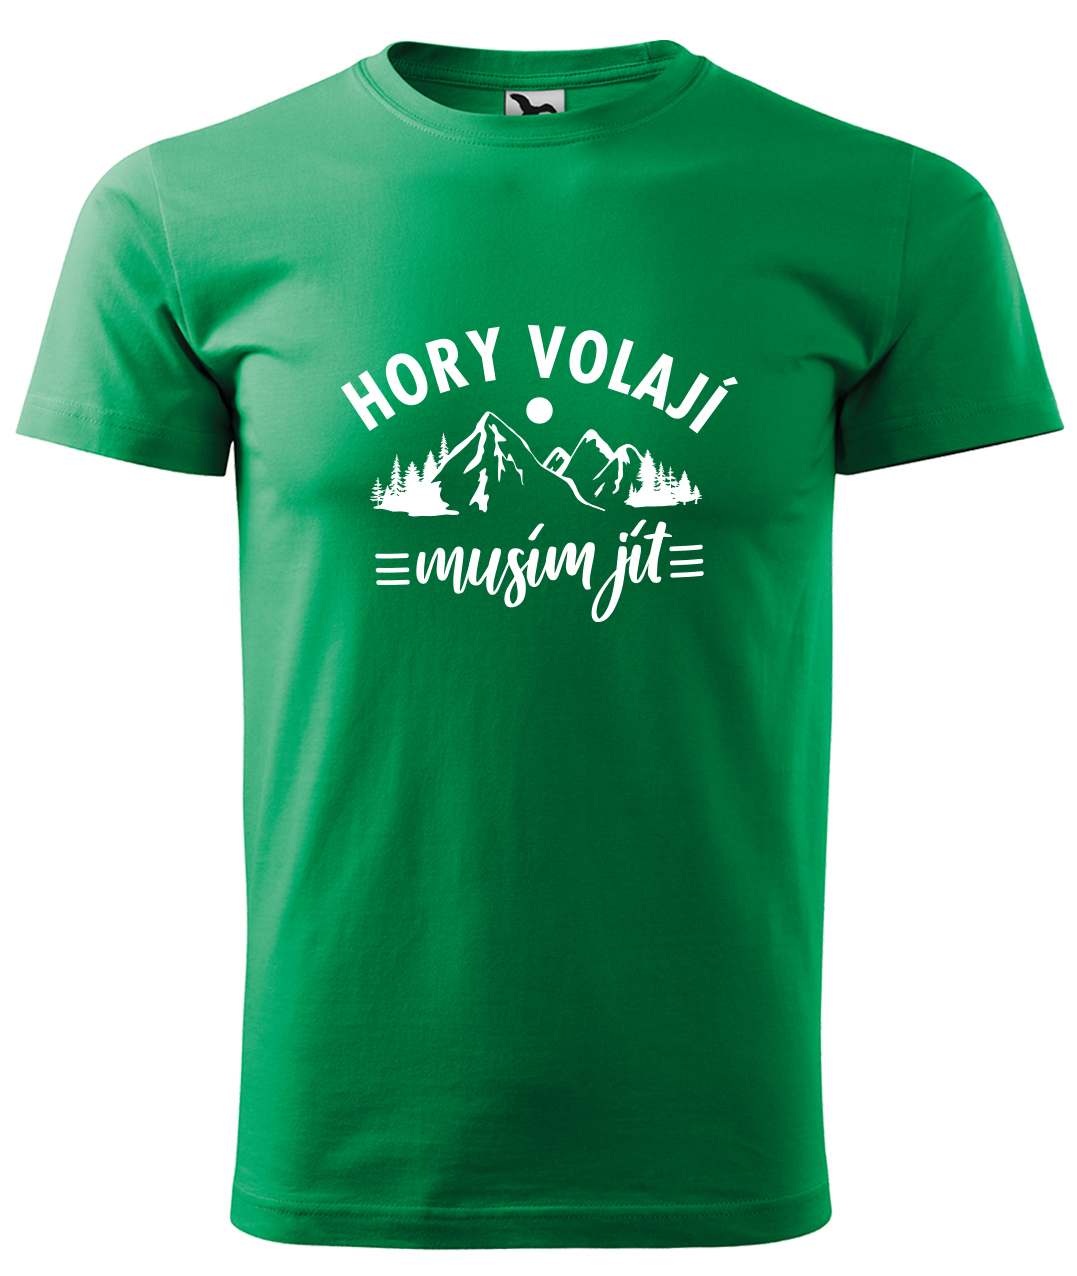 Dětské tričko na hory - Hory volají, musím jít Velikost: 4 roky / 110 cm, Barva: Středně zelená (16), Délka rukávu: Krátký rukáv